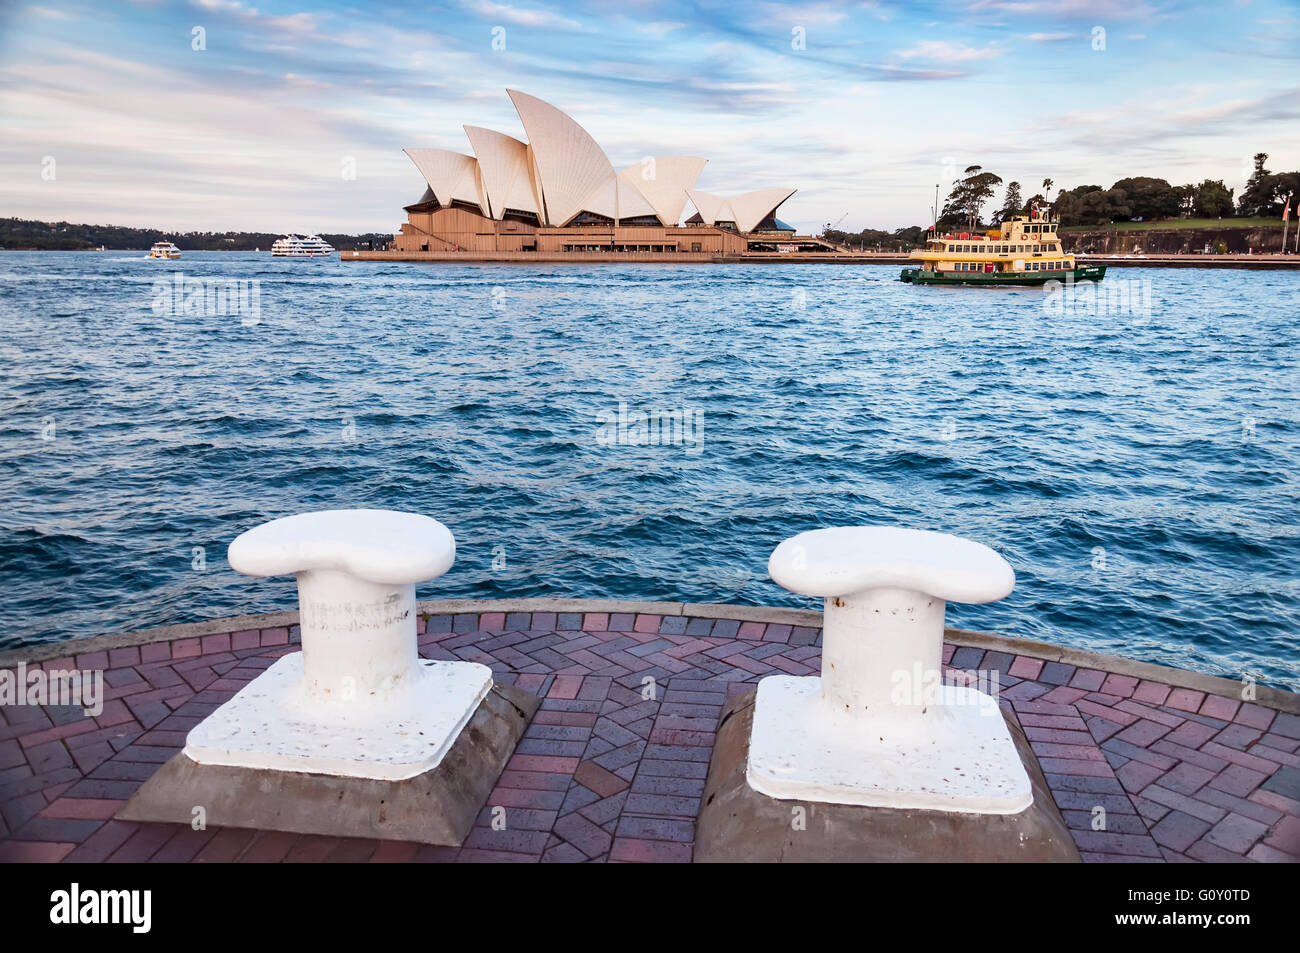 The Iconic Sydney Opera House Stock Photo